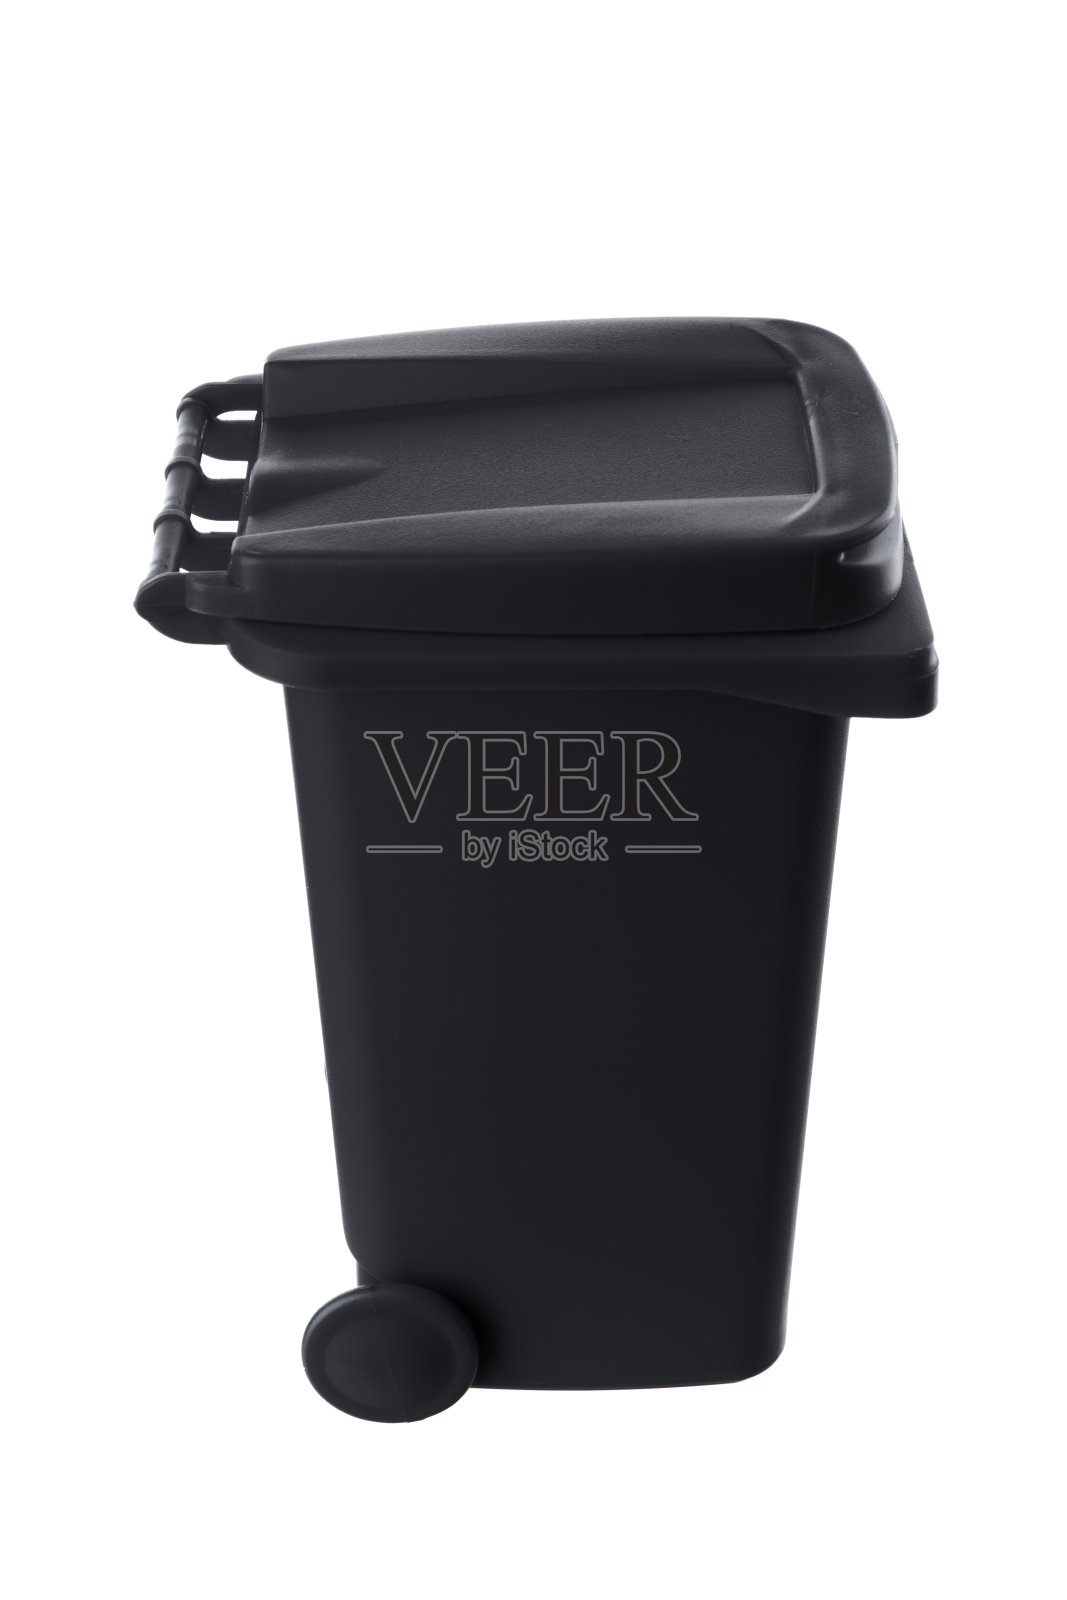 塑料黑色垃圾桶孤立在白色背景照片摄影图片